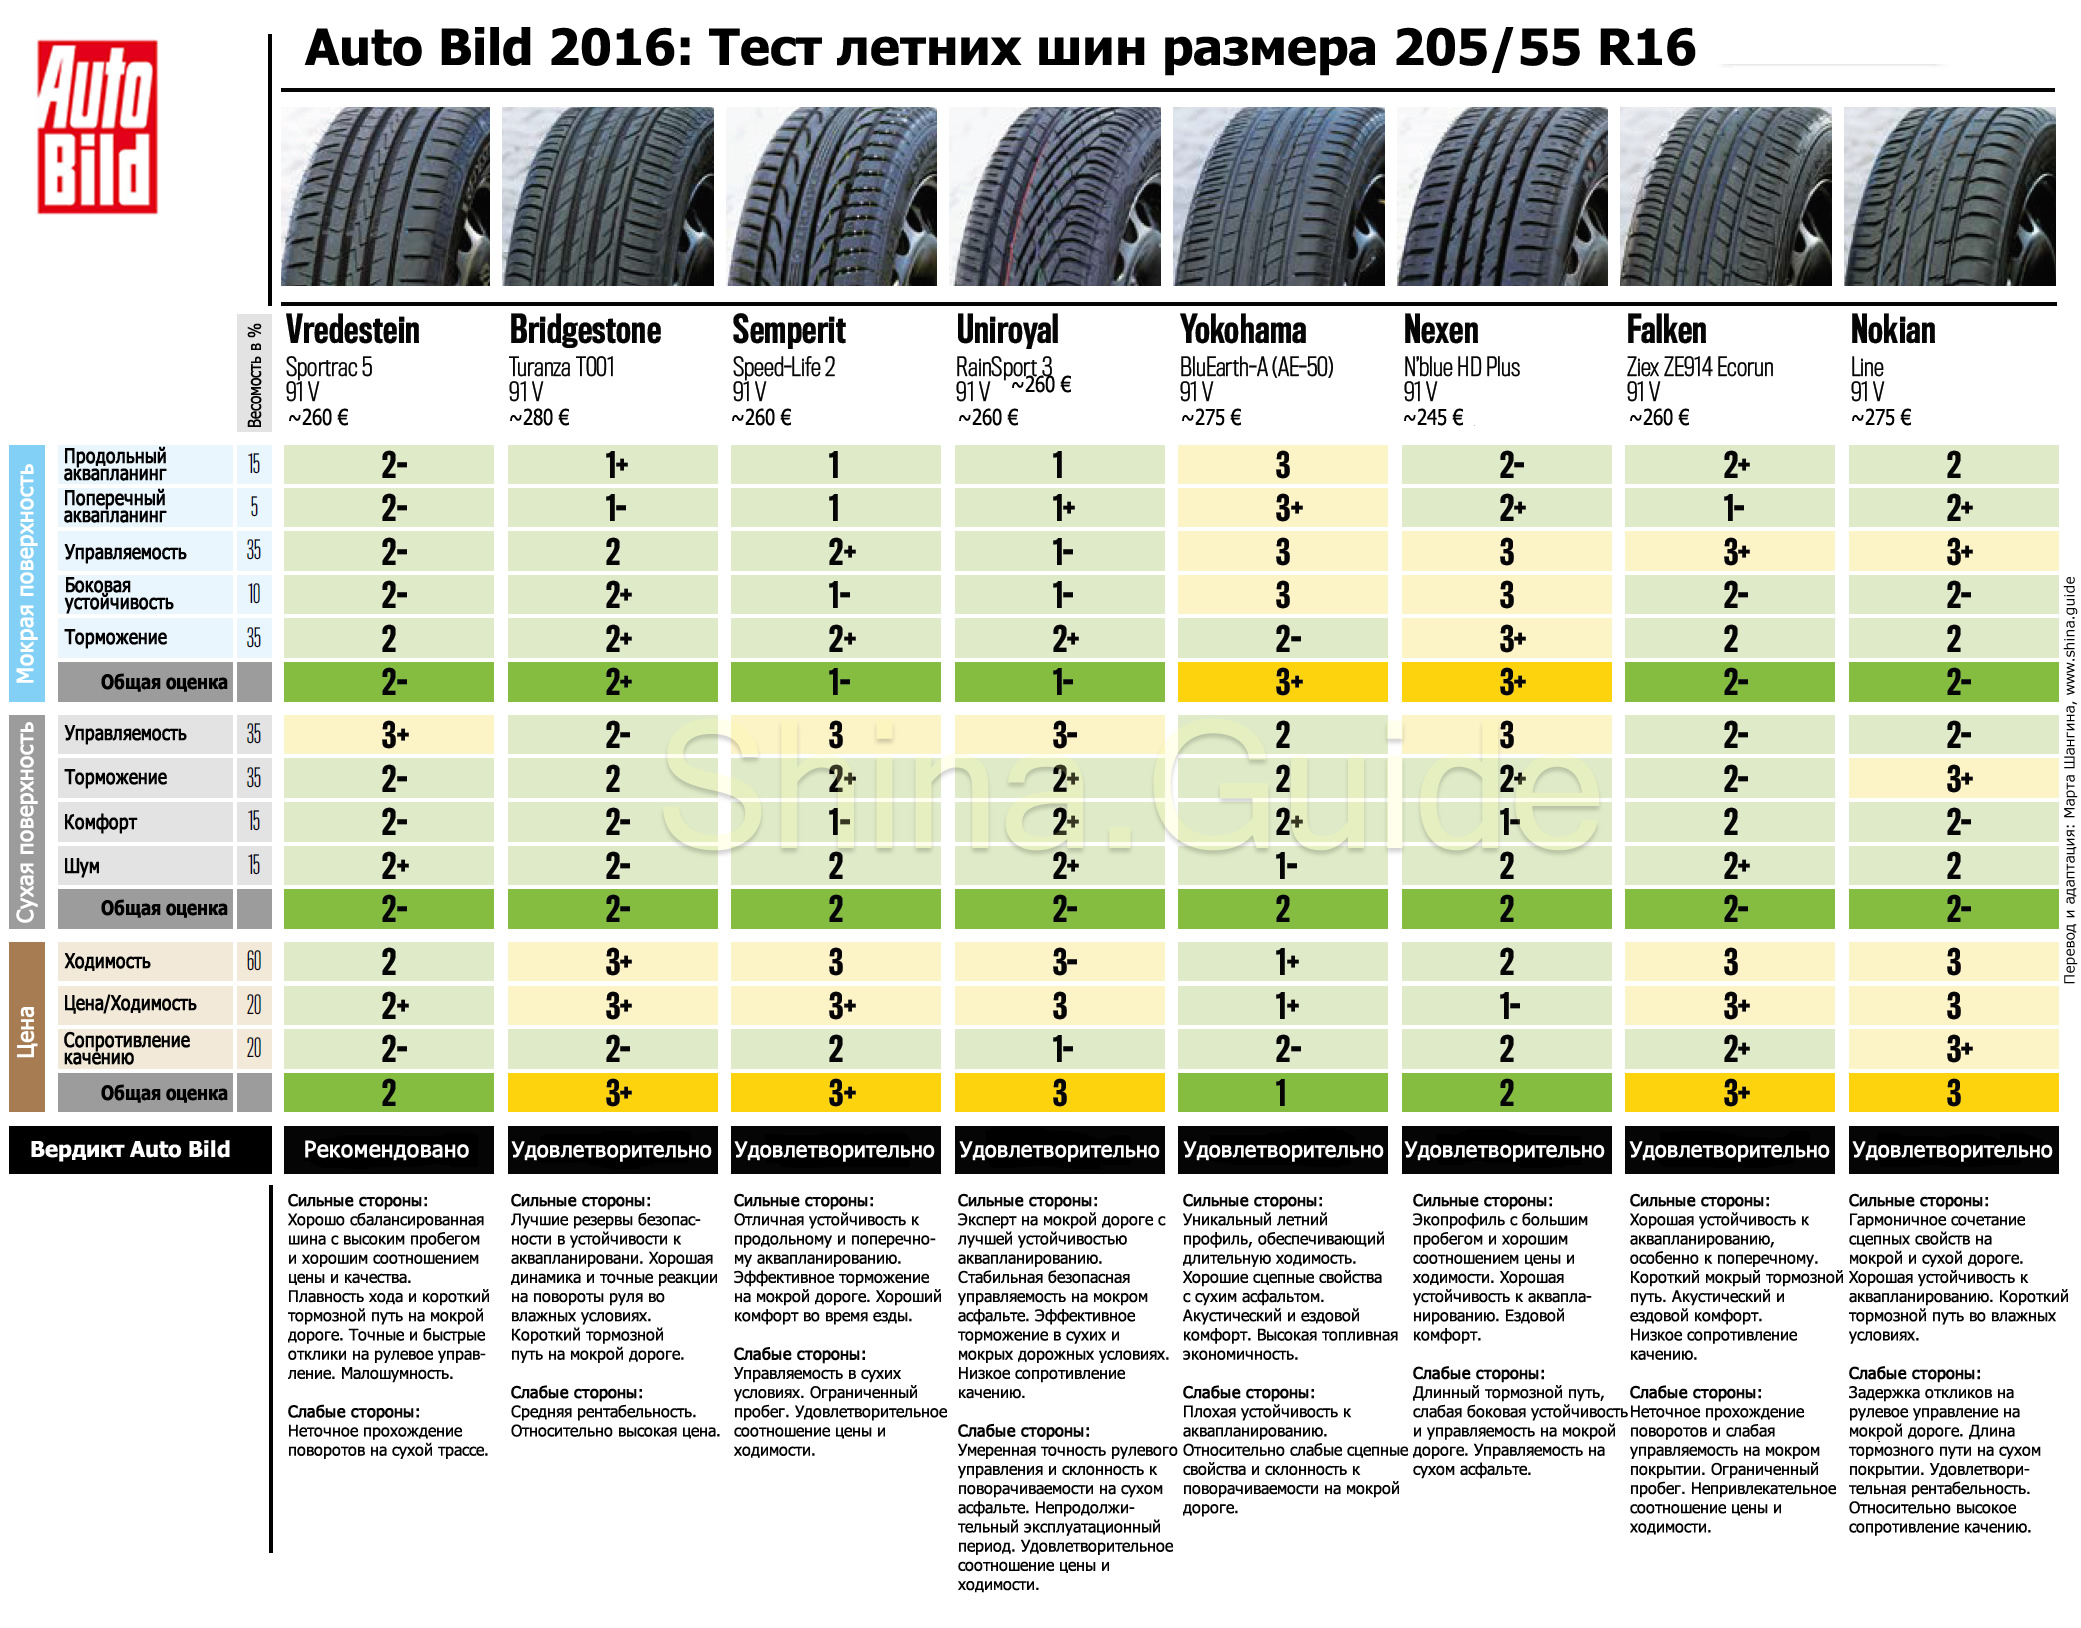 Auto-Bild-2016-summer-tire-205-55-R16-test-results-part-2